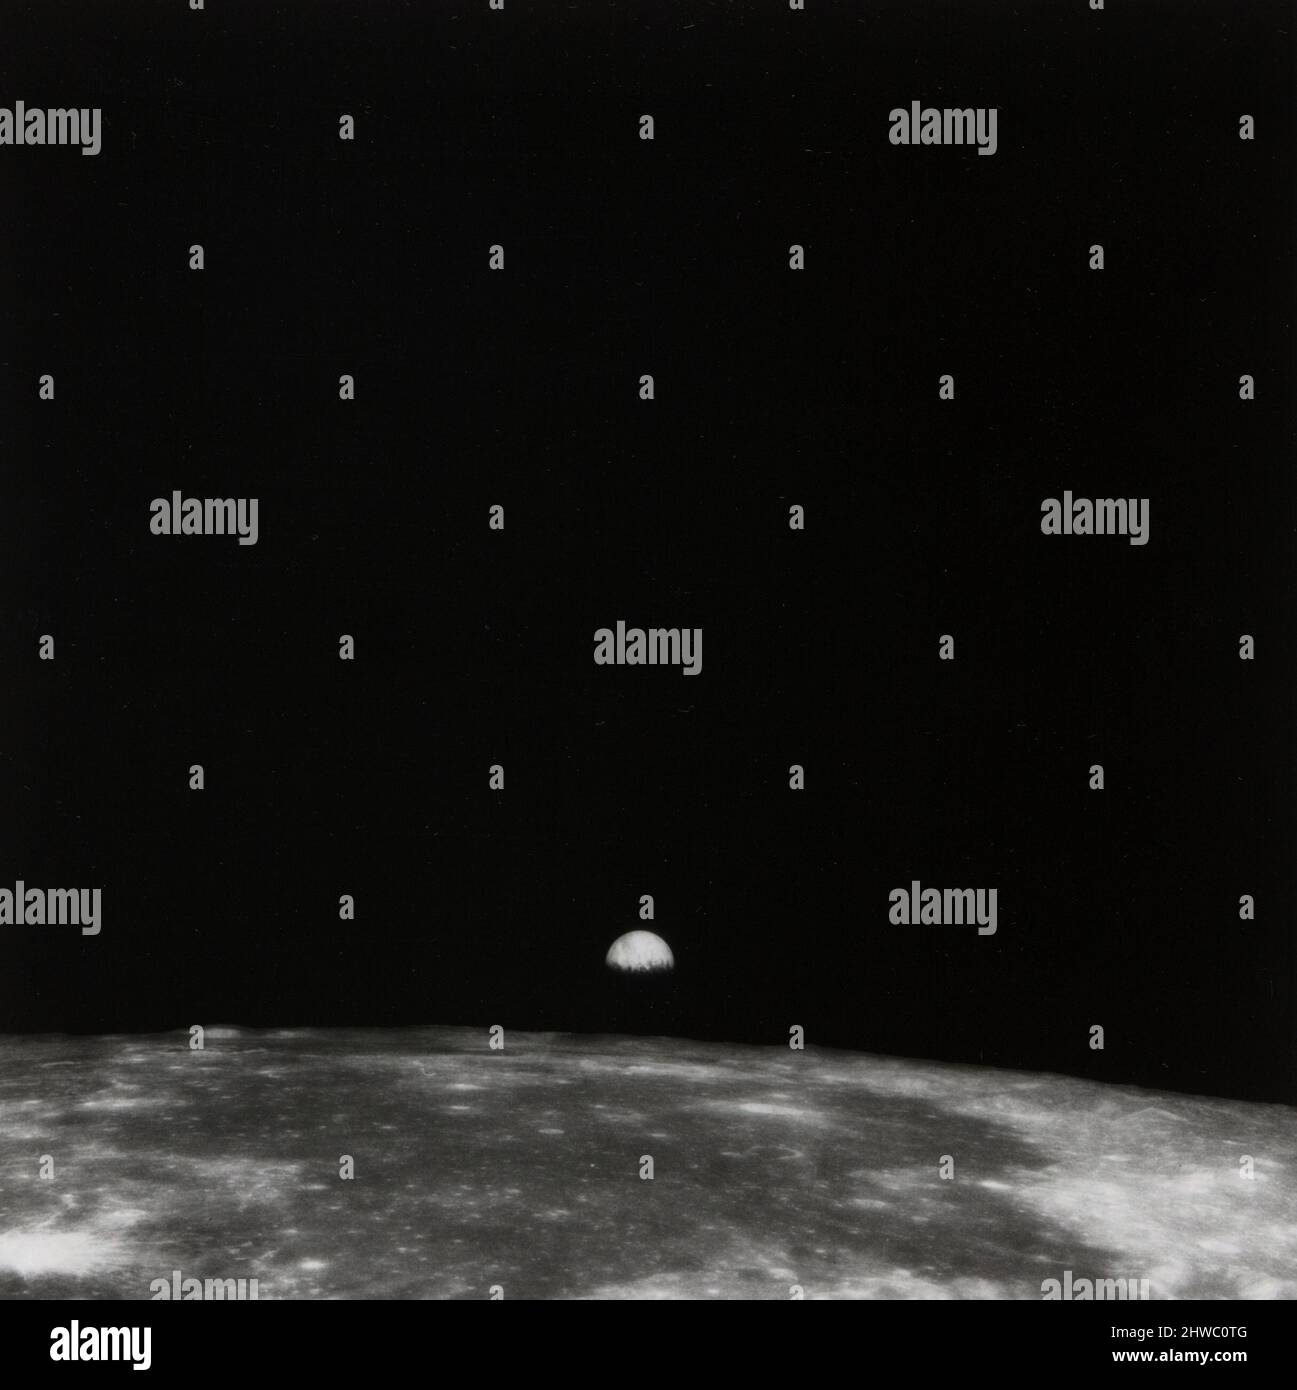 Die Oberfläche des Mondes, die Earthrise. Künstler: NASA, Amerikaner, Ende des 20.. Jahrhunderts Stockfoto